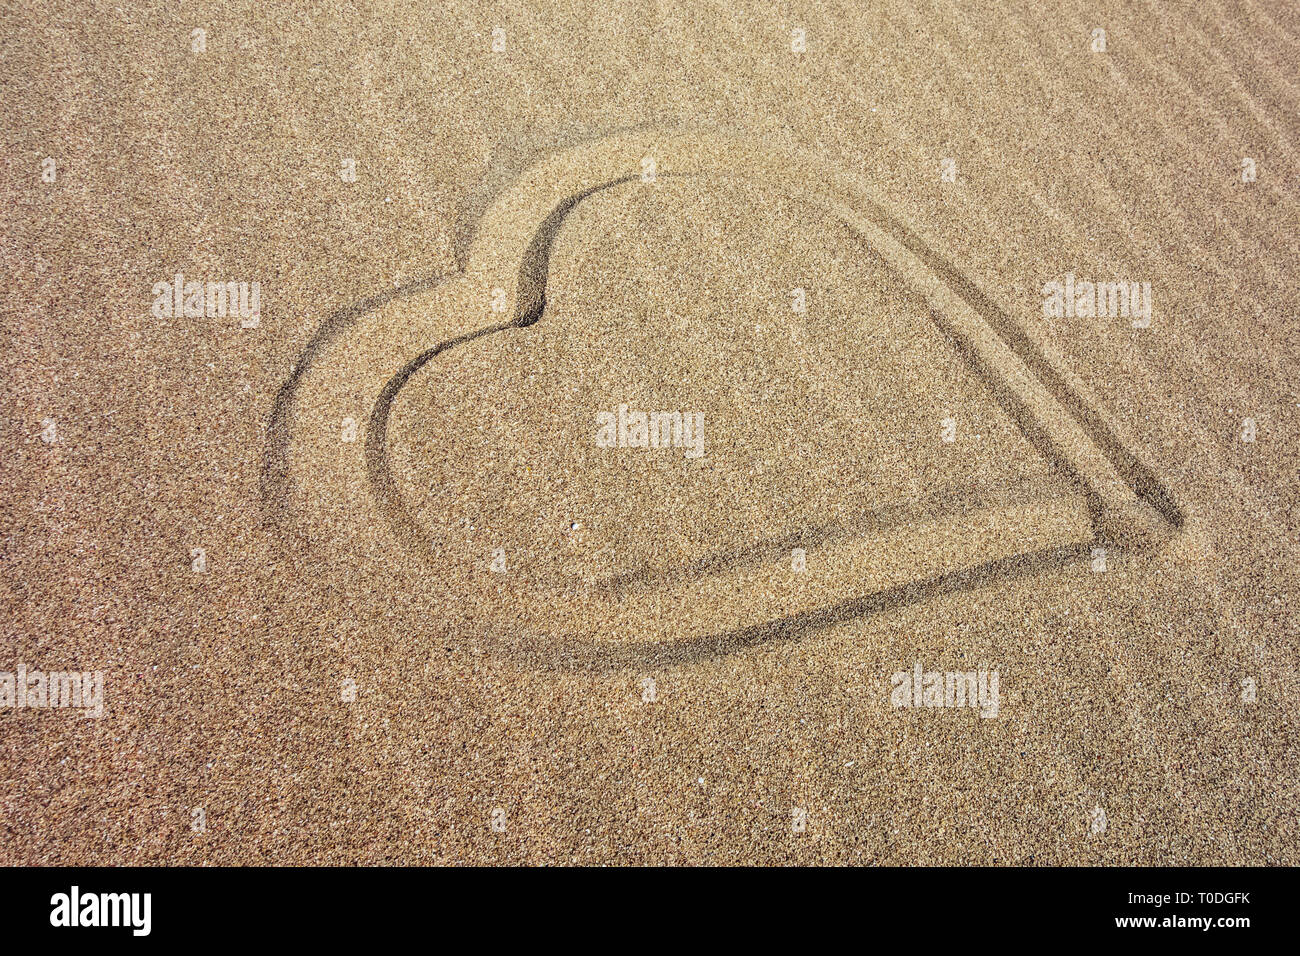 Herz am Sandstrand an der Küste gezogen Stockfoto